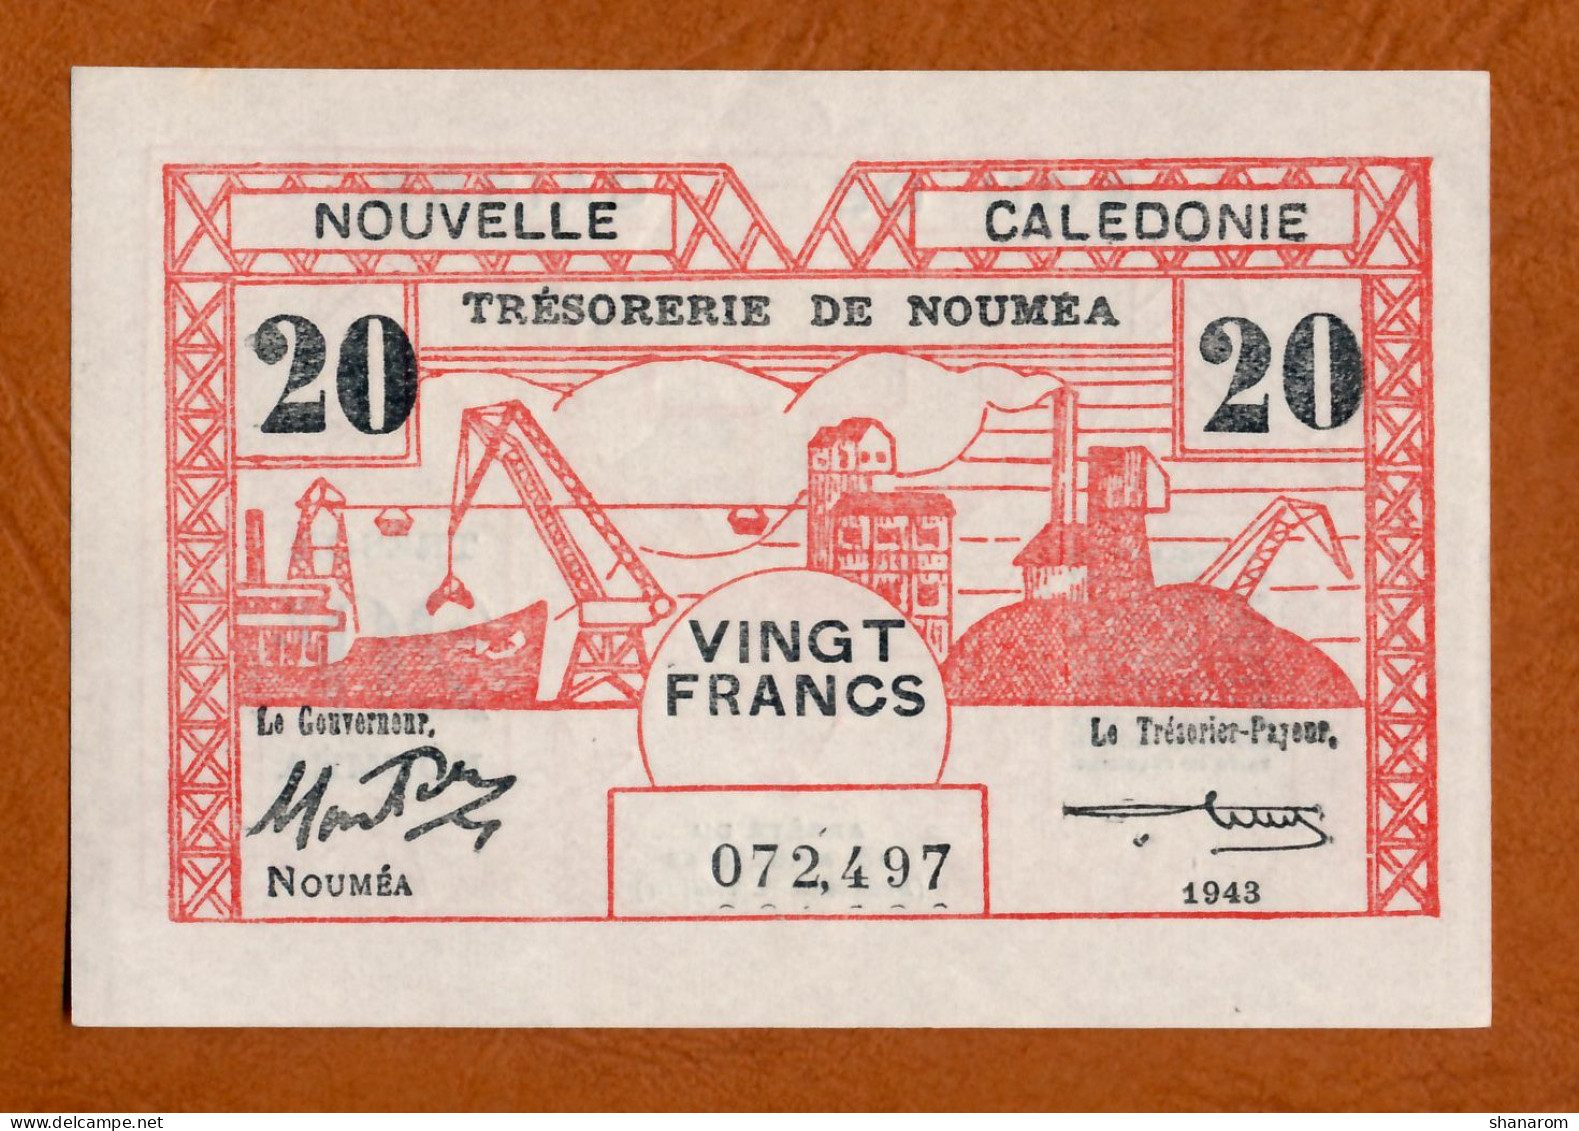 1943 // NOUVELLE CALEDONIE // TRESORERIE DE NOUMEA // Avril 1943 // Vingt Francs // XF+ / SUP+ - Nouméa (New Caledonia 1873-1985)